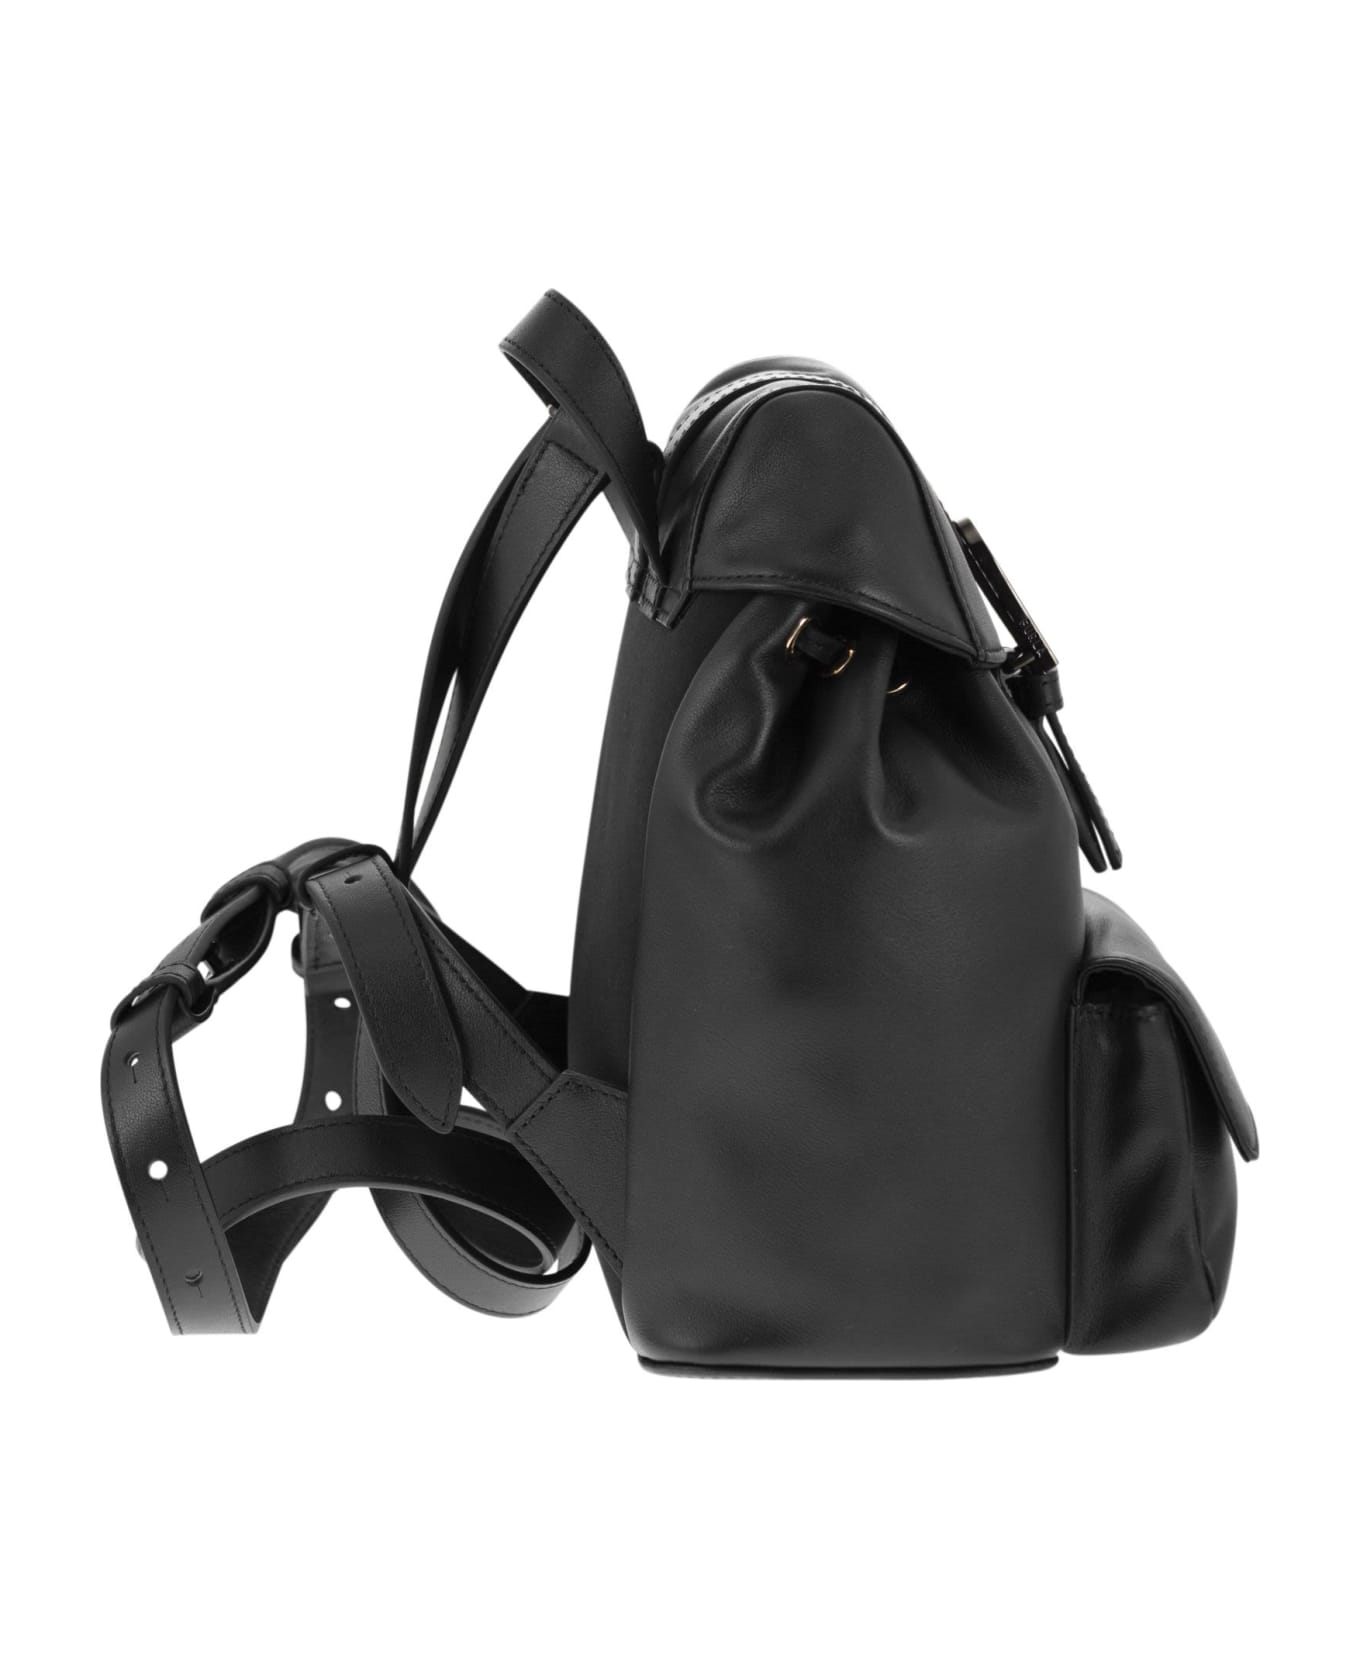 Furla Flow - Leather Backpack - Black バックパック